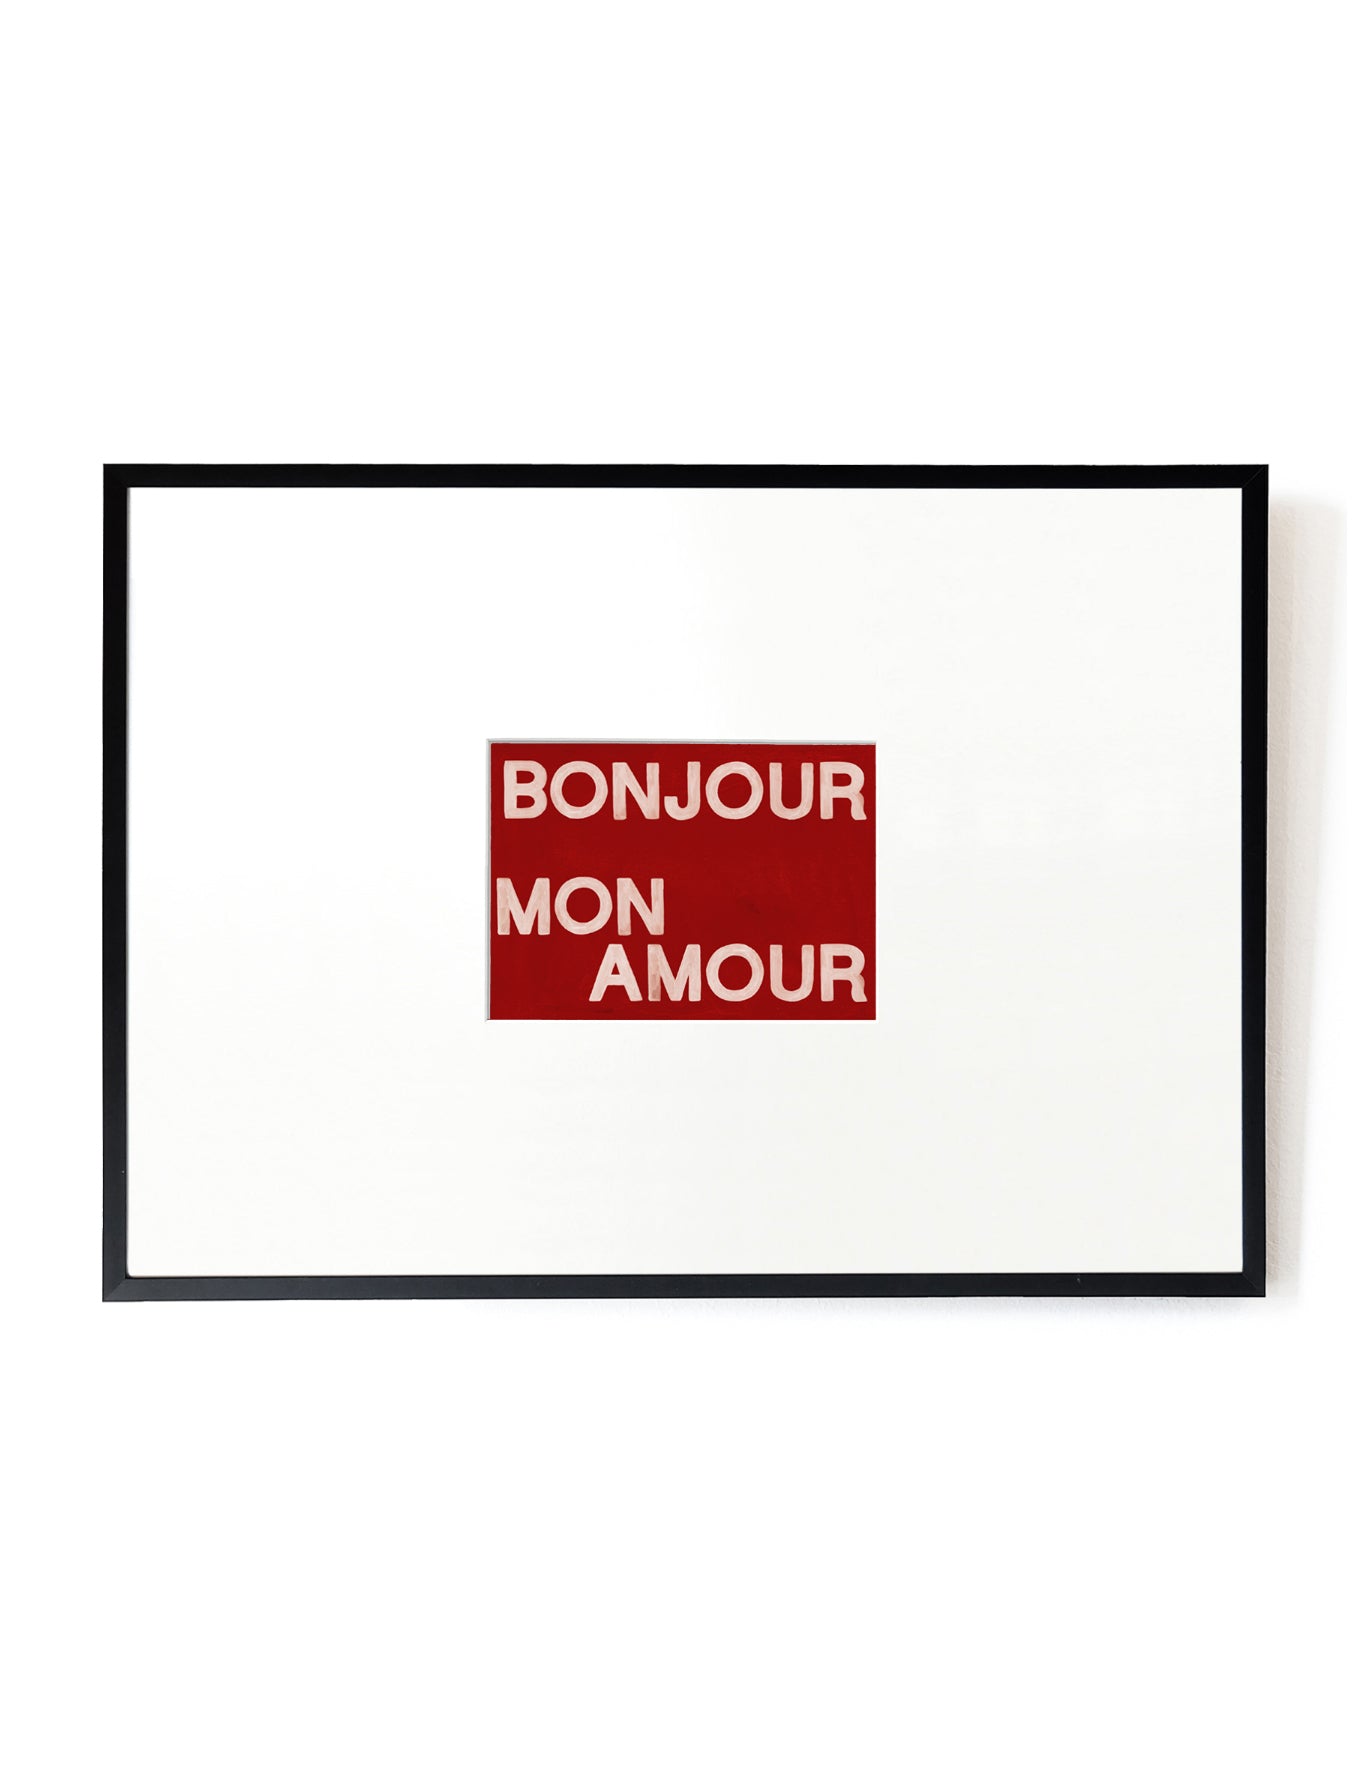 Bonjour mon Amour card artwork framed